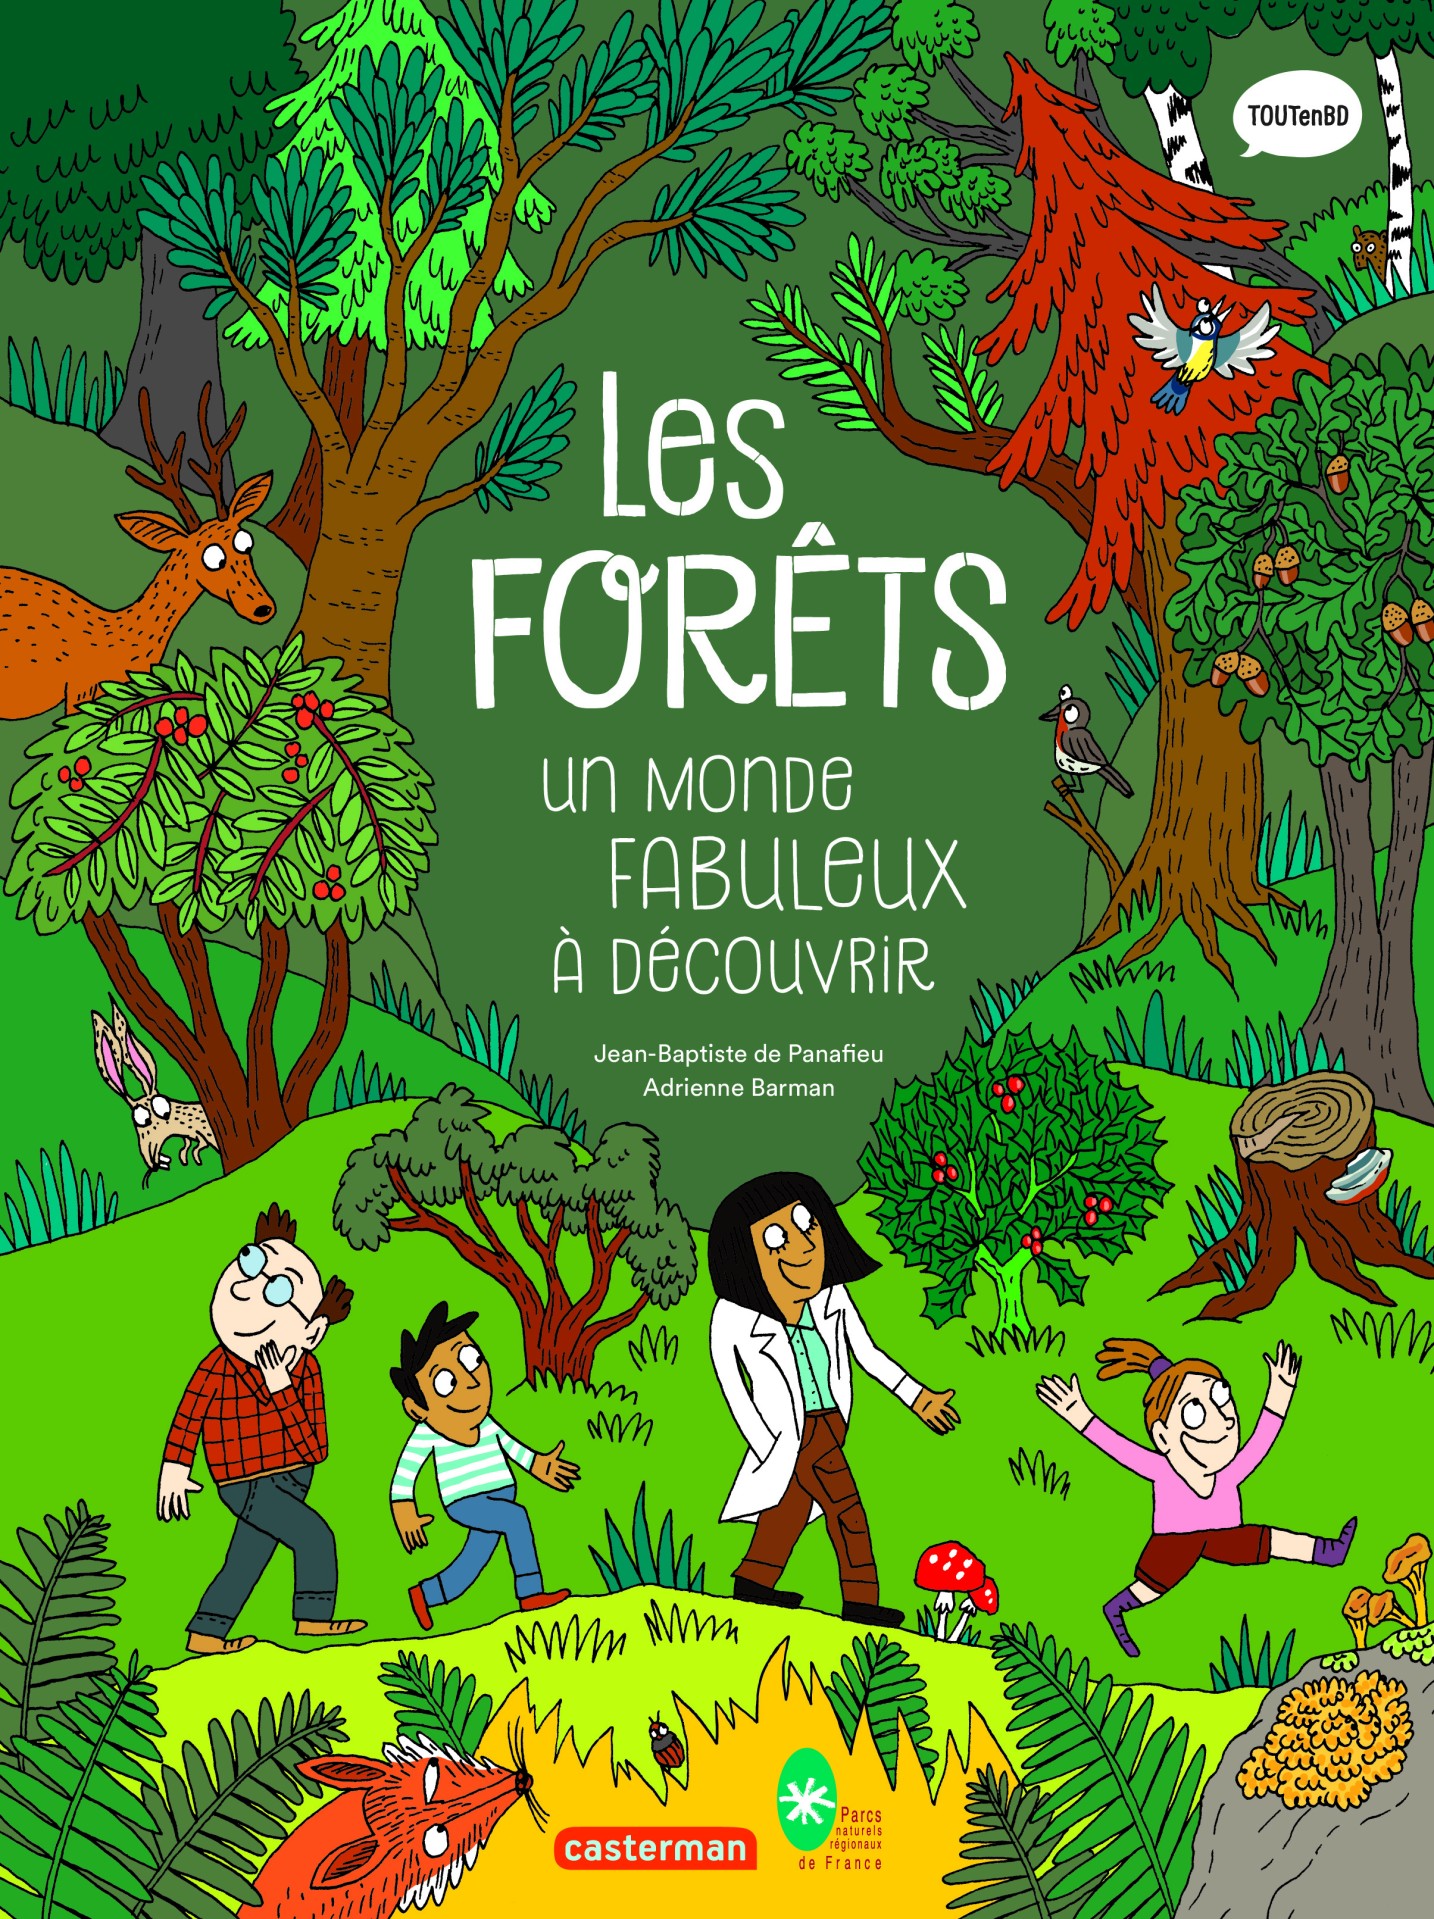 "Les forêts, un monde fabuleux à découvrir"